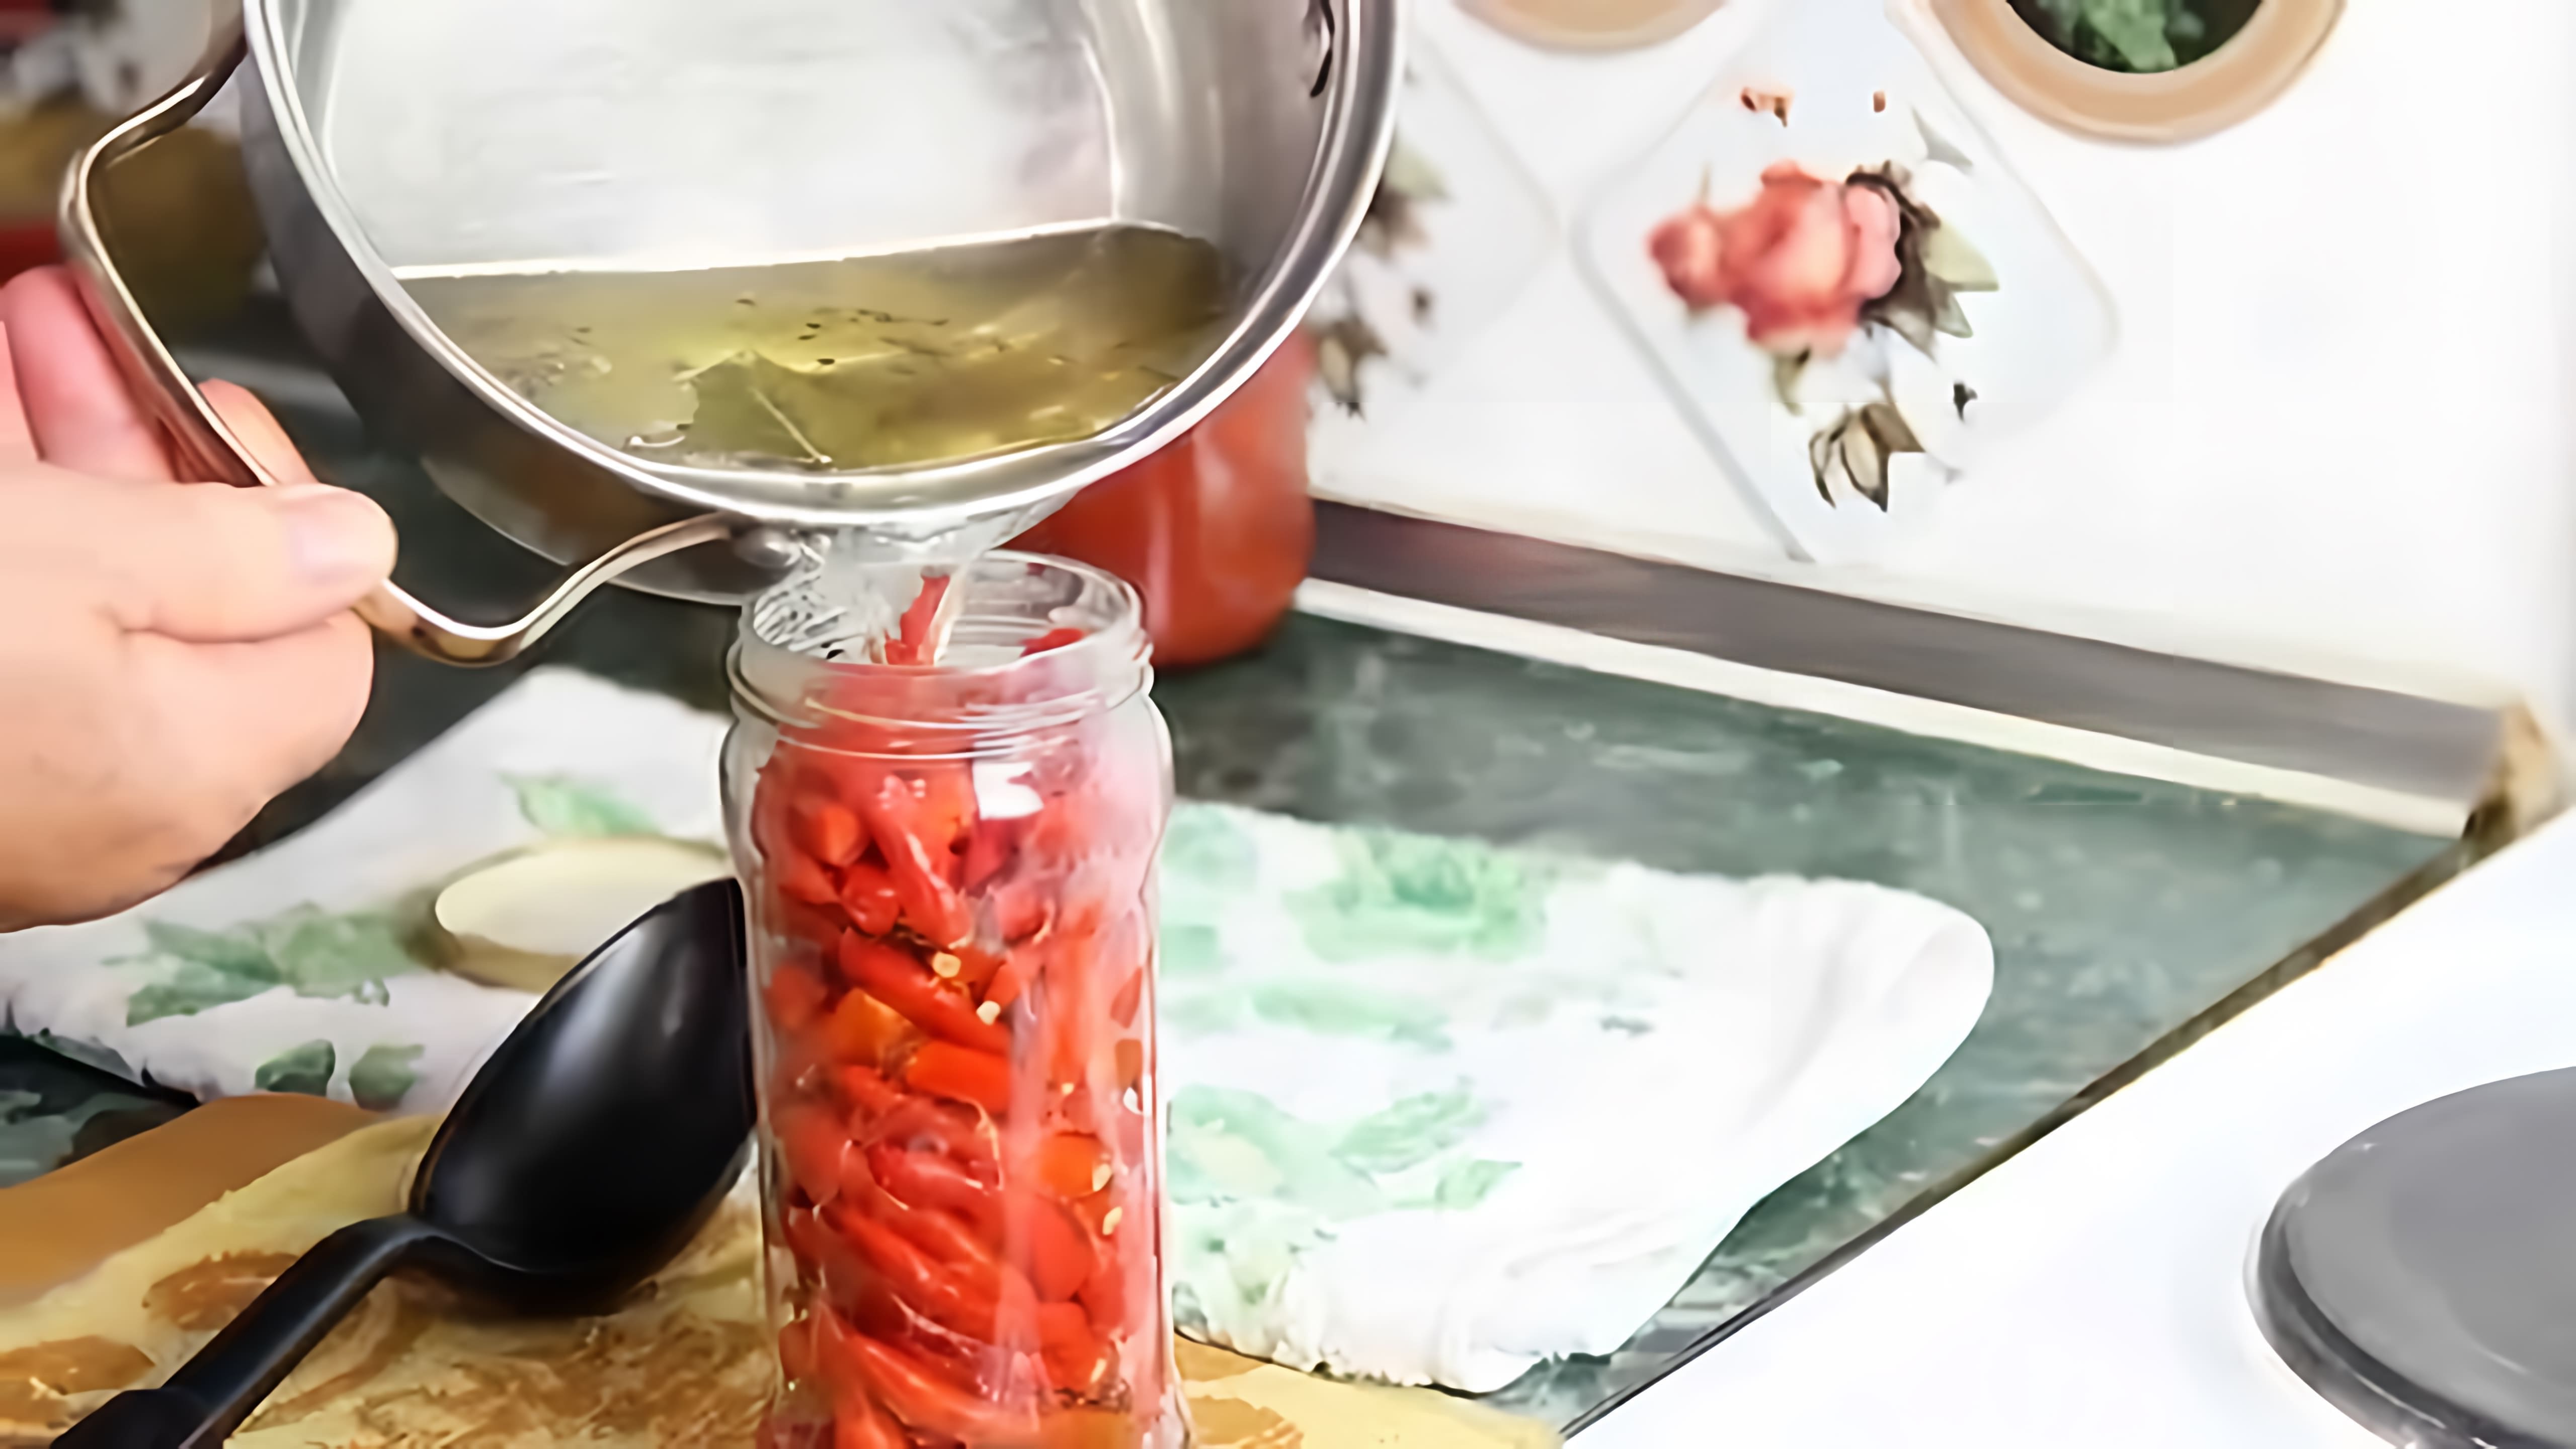 Видео показывает рецепт маринования острых перцев